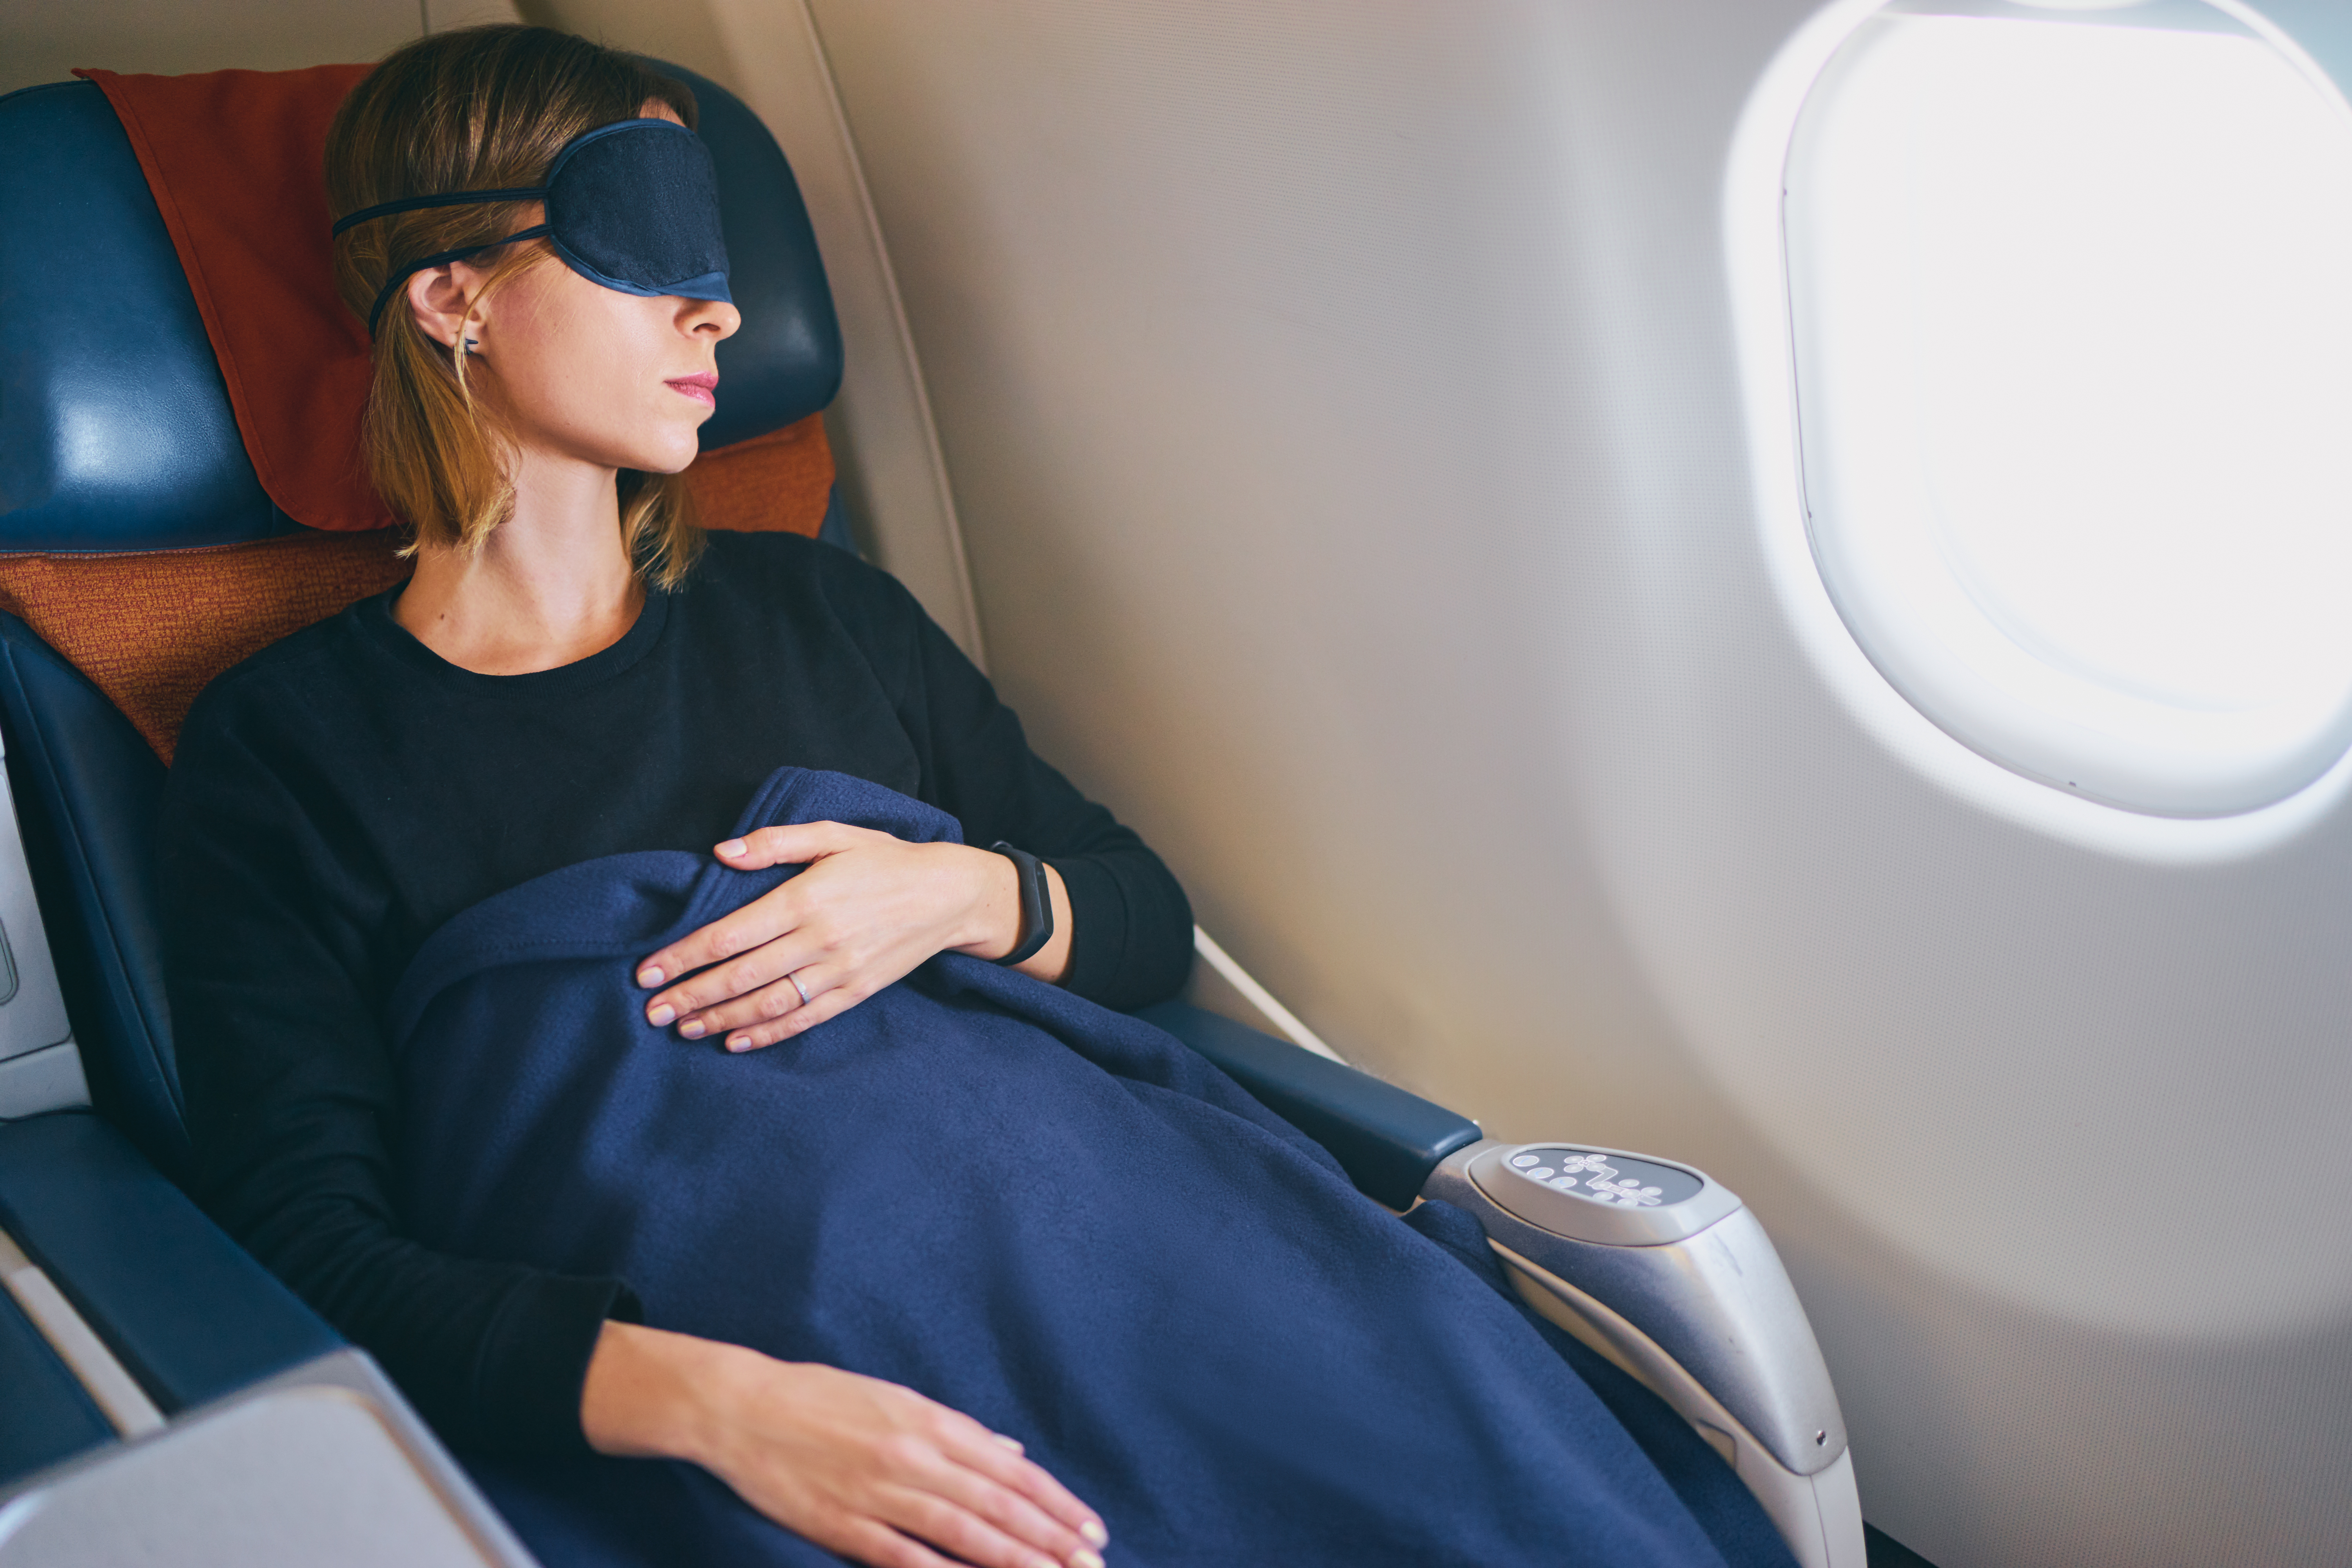 Une passagère endormie dans un avion | Source : Shutterstock